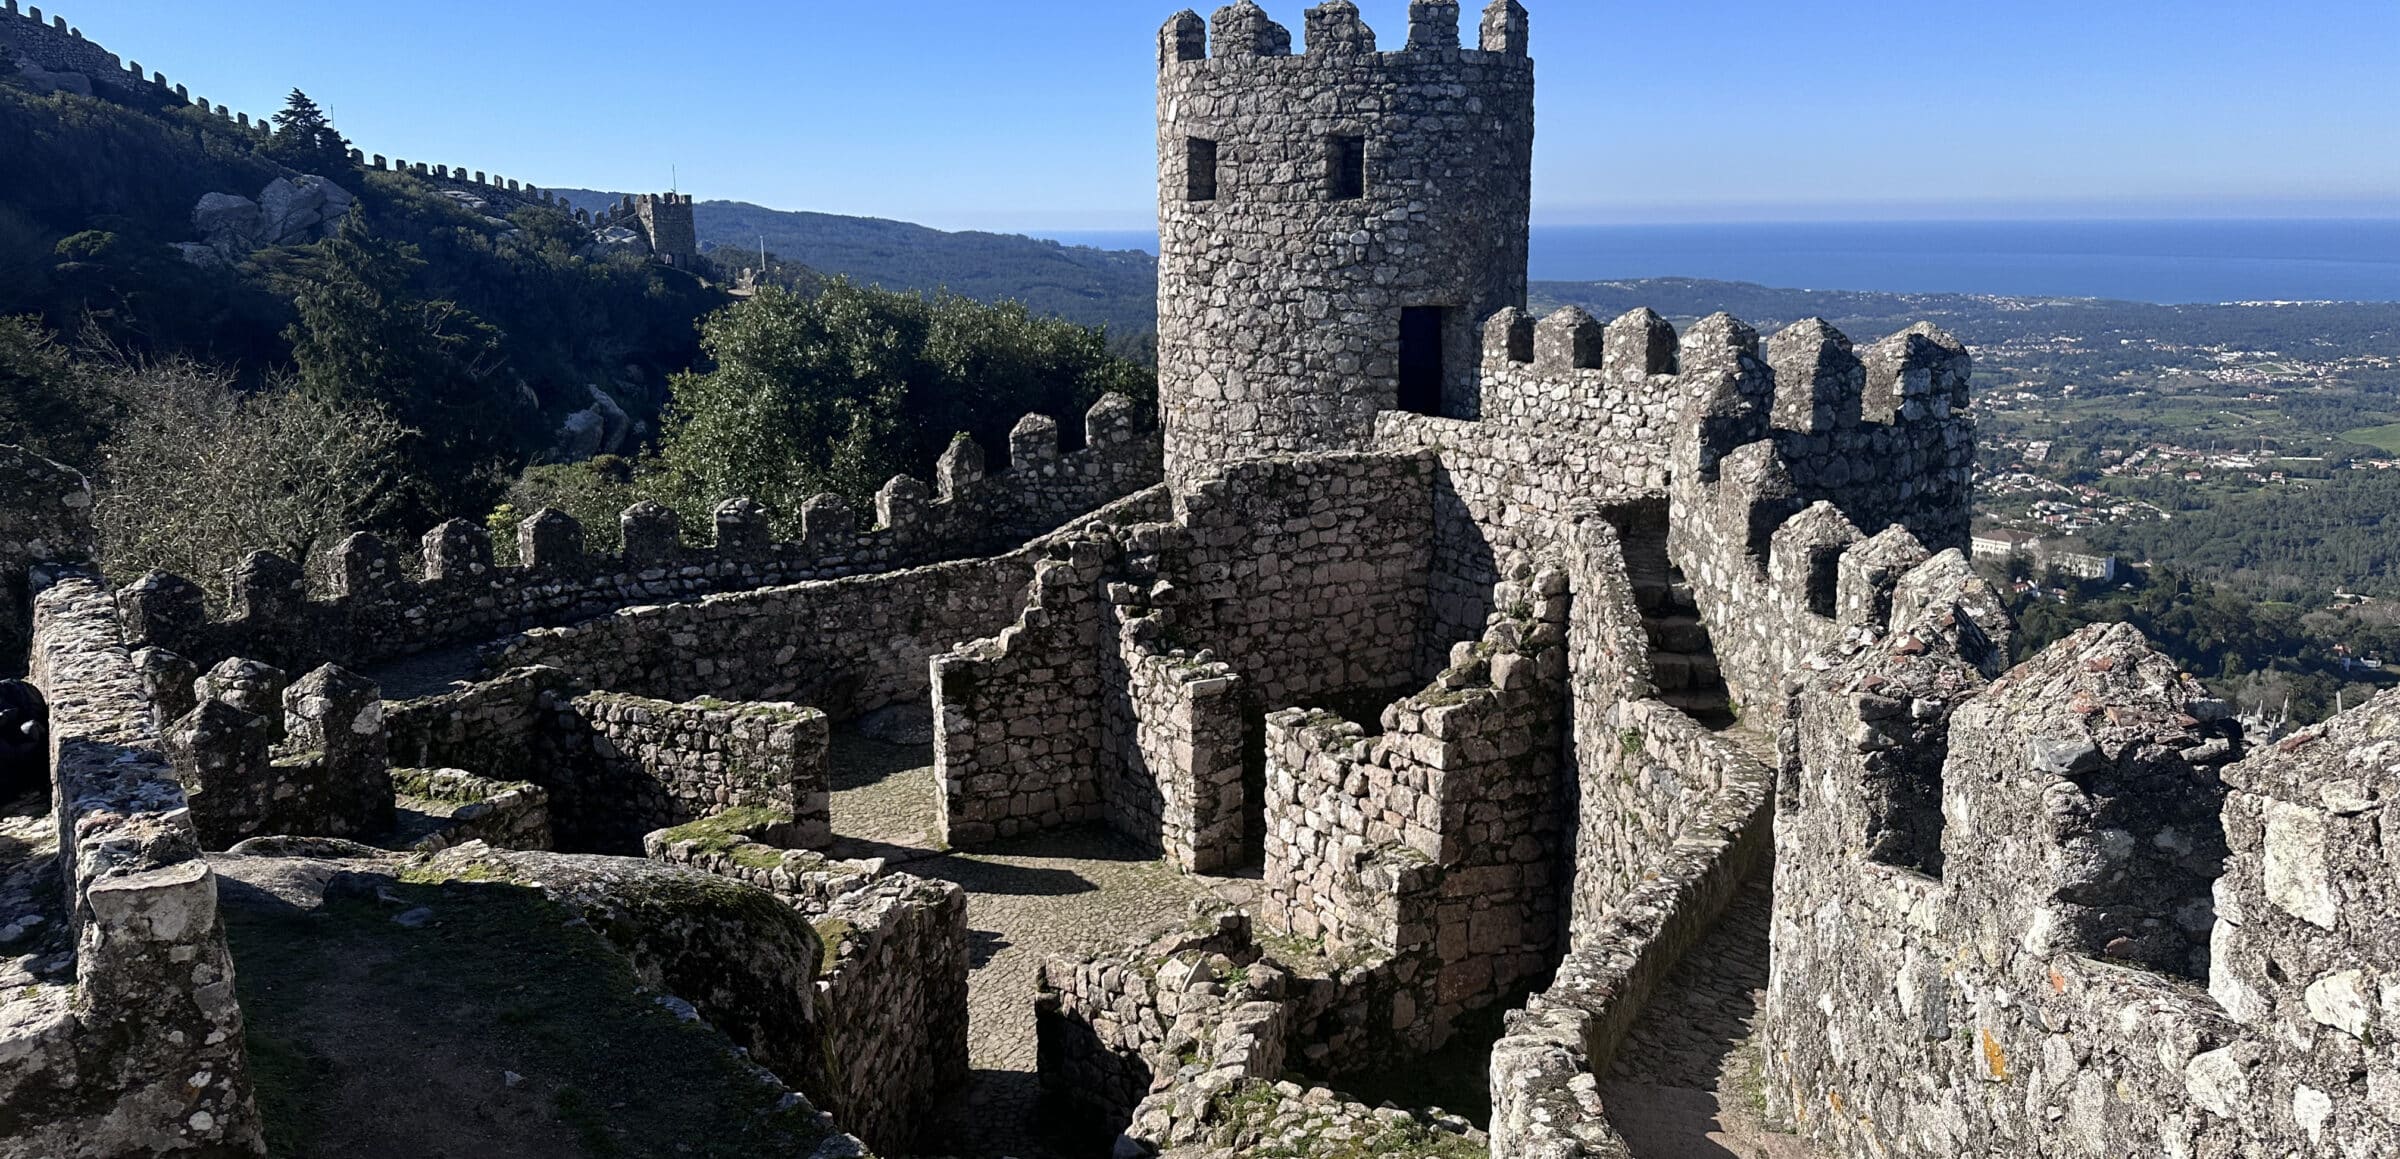 The quite magnificent castle